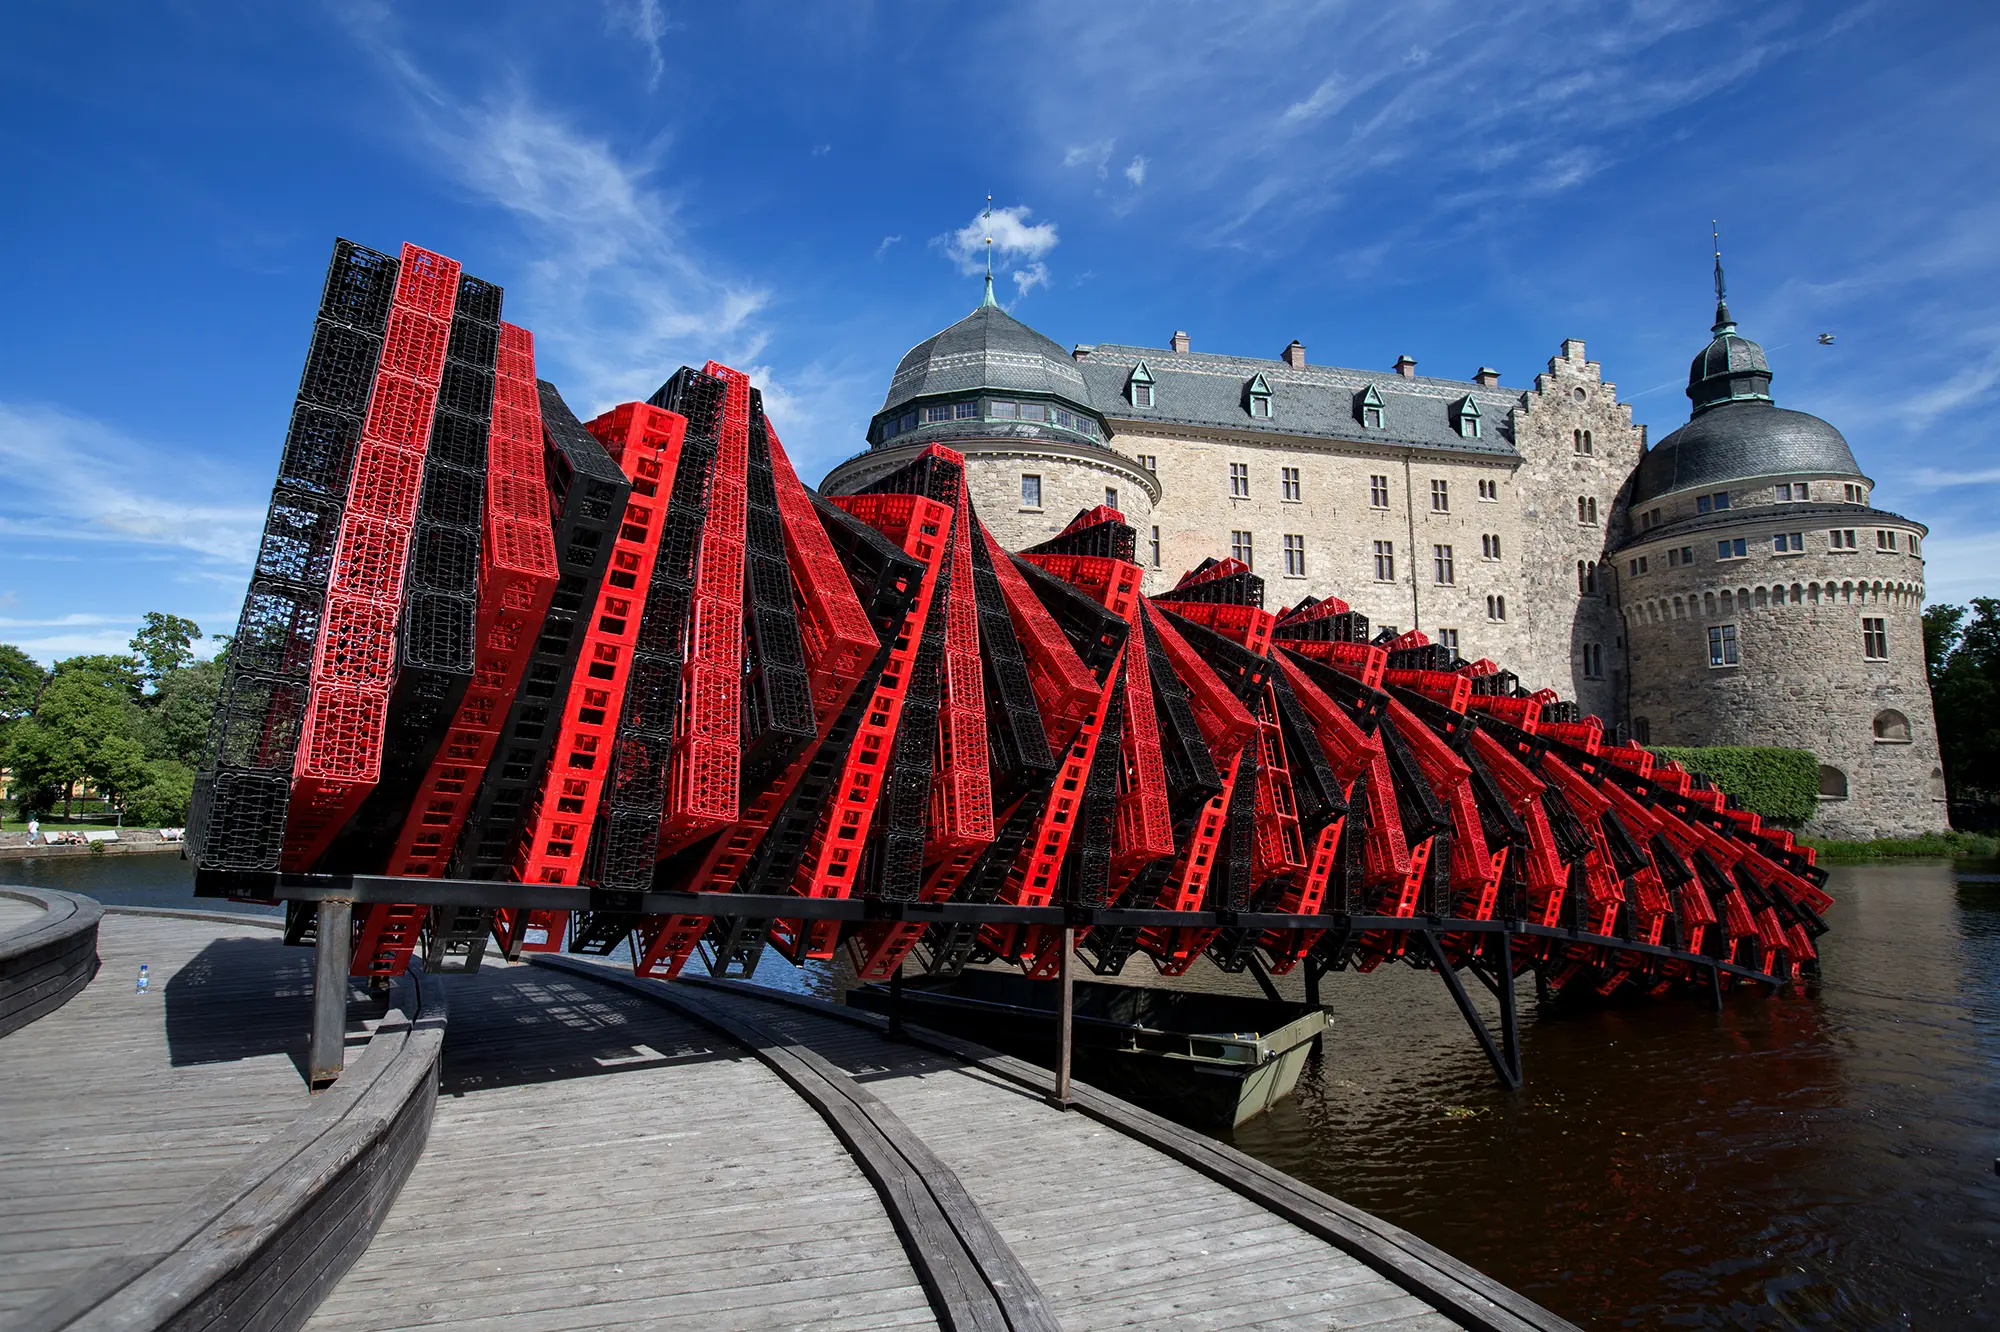 Framför Örebro slott syns en mycket stor skulptur som delvis är placerad över vattnet. Skulpturen består av ett stort antal röda och svarta plastlådor som är ihopsatta i formen av en tät spiral.